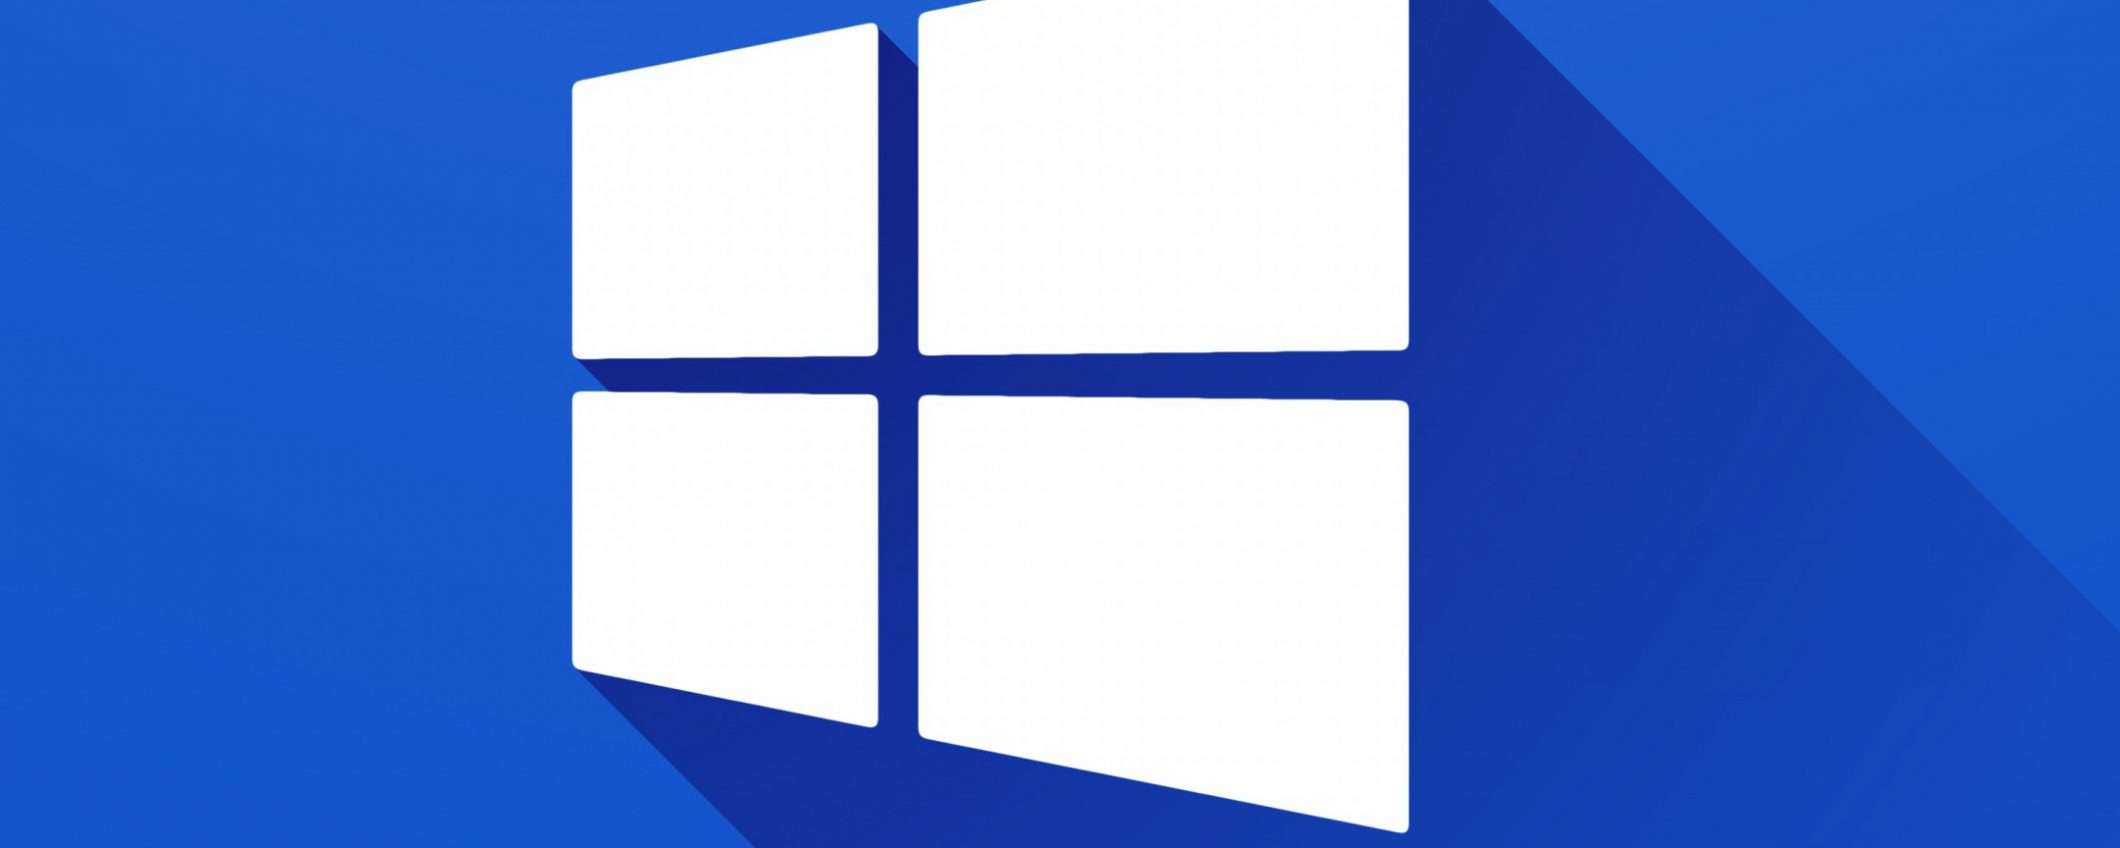 Windows 10 19H1: le novità della build 18277